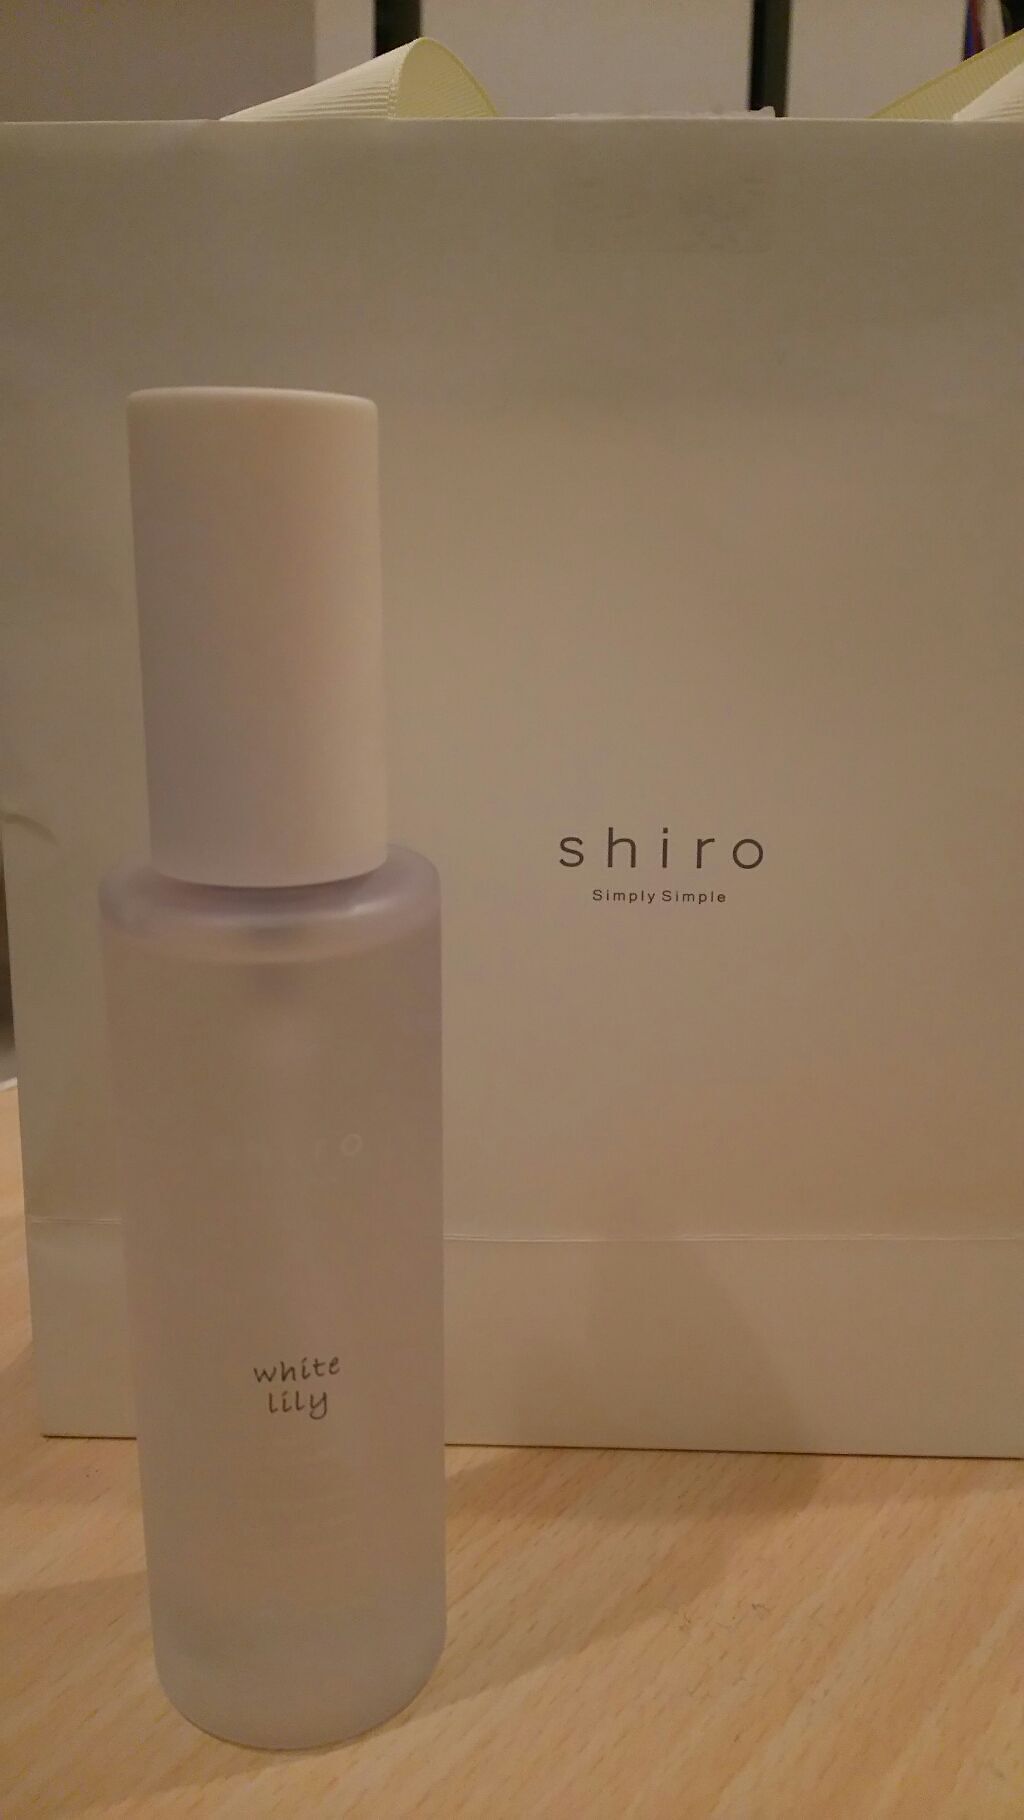 ホワイトリリー ボディコロン Shiroを使った口コミ 新宿のshiro の店舗で購入しました 一 By しょう 乾燥肌 代後半 Lips